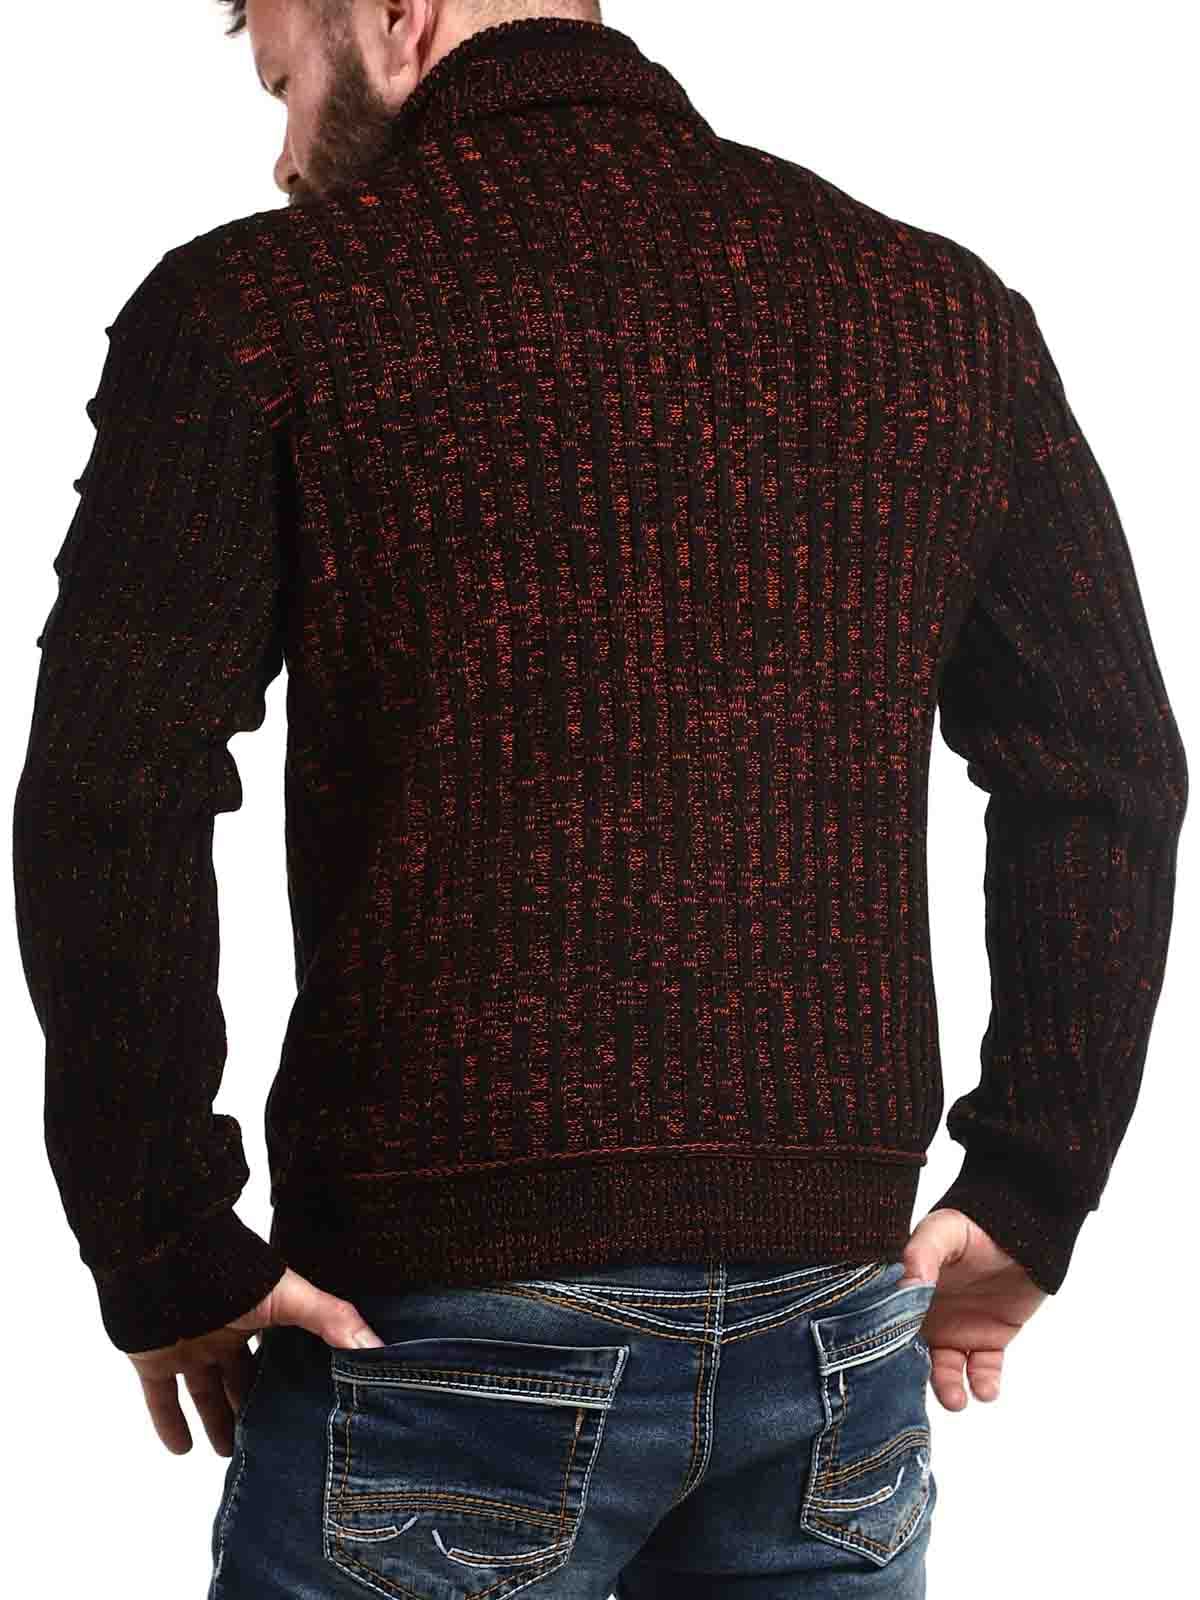 Bartoli Sweater Black Orange_4.jpg